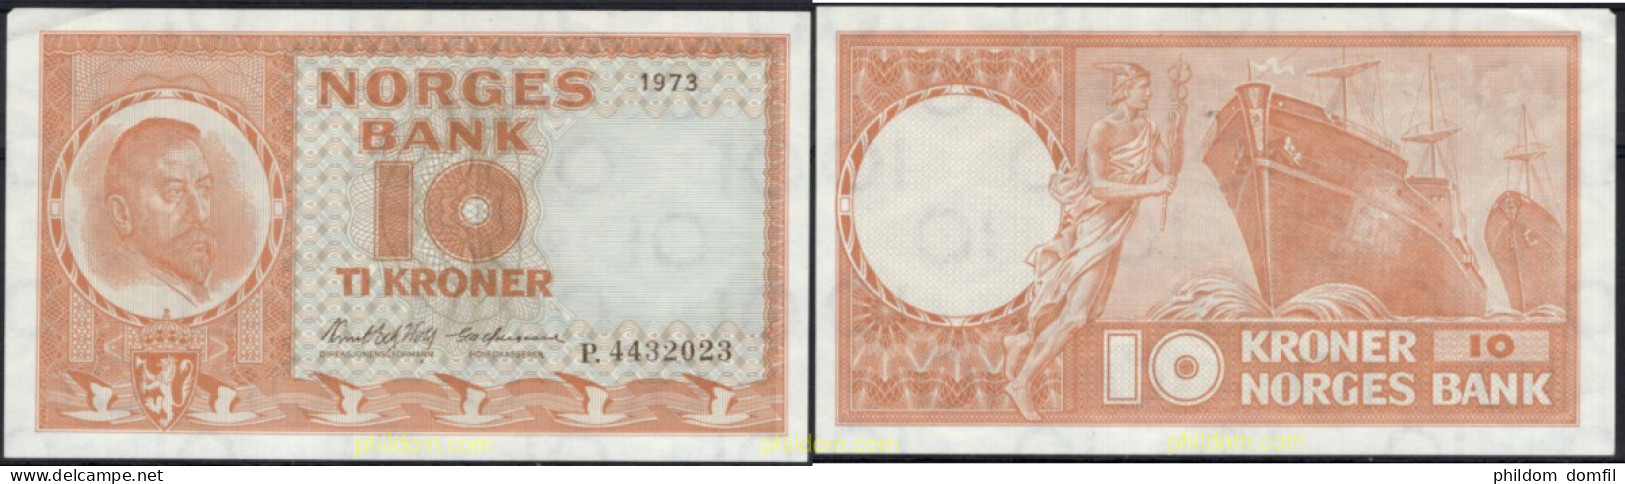 8536 NORUEGA 1973 NORWAY NORGES BANK 1973 10 KRONER - Norway